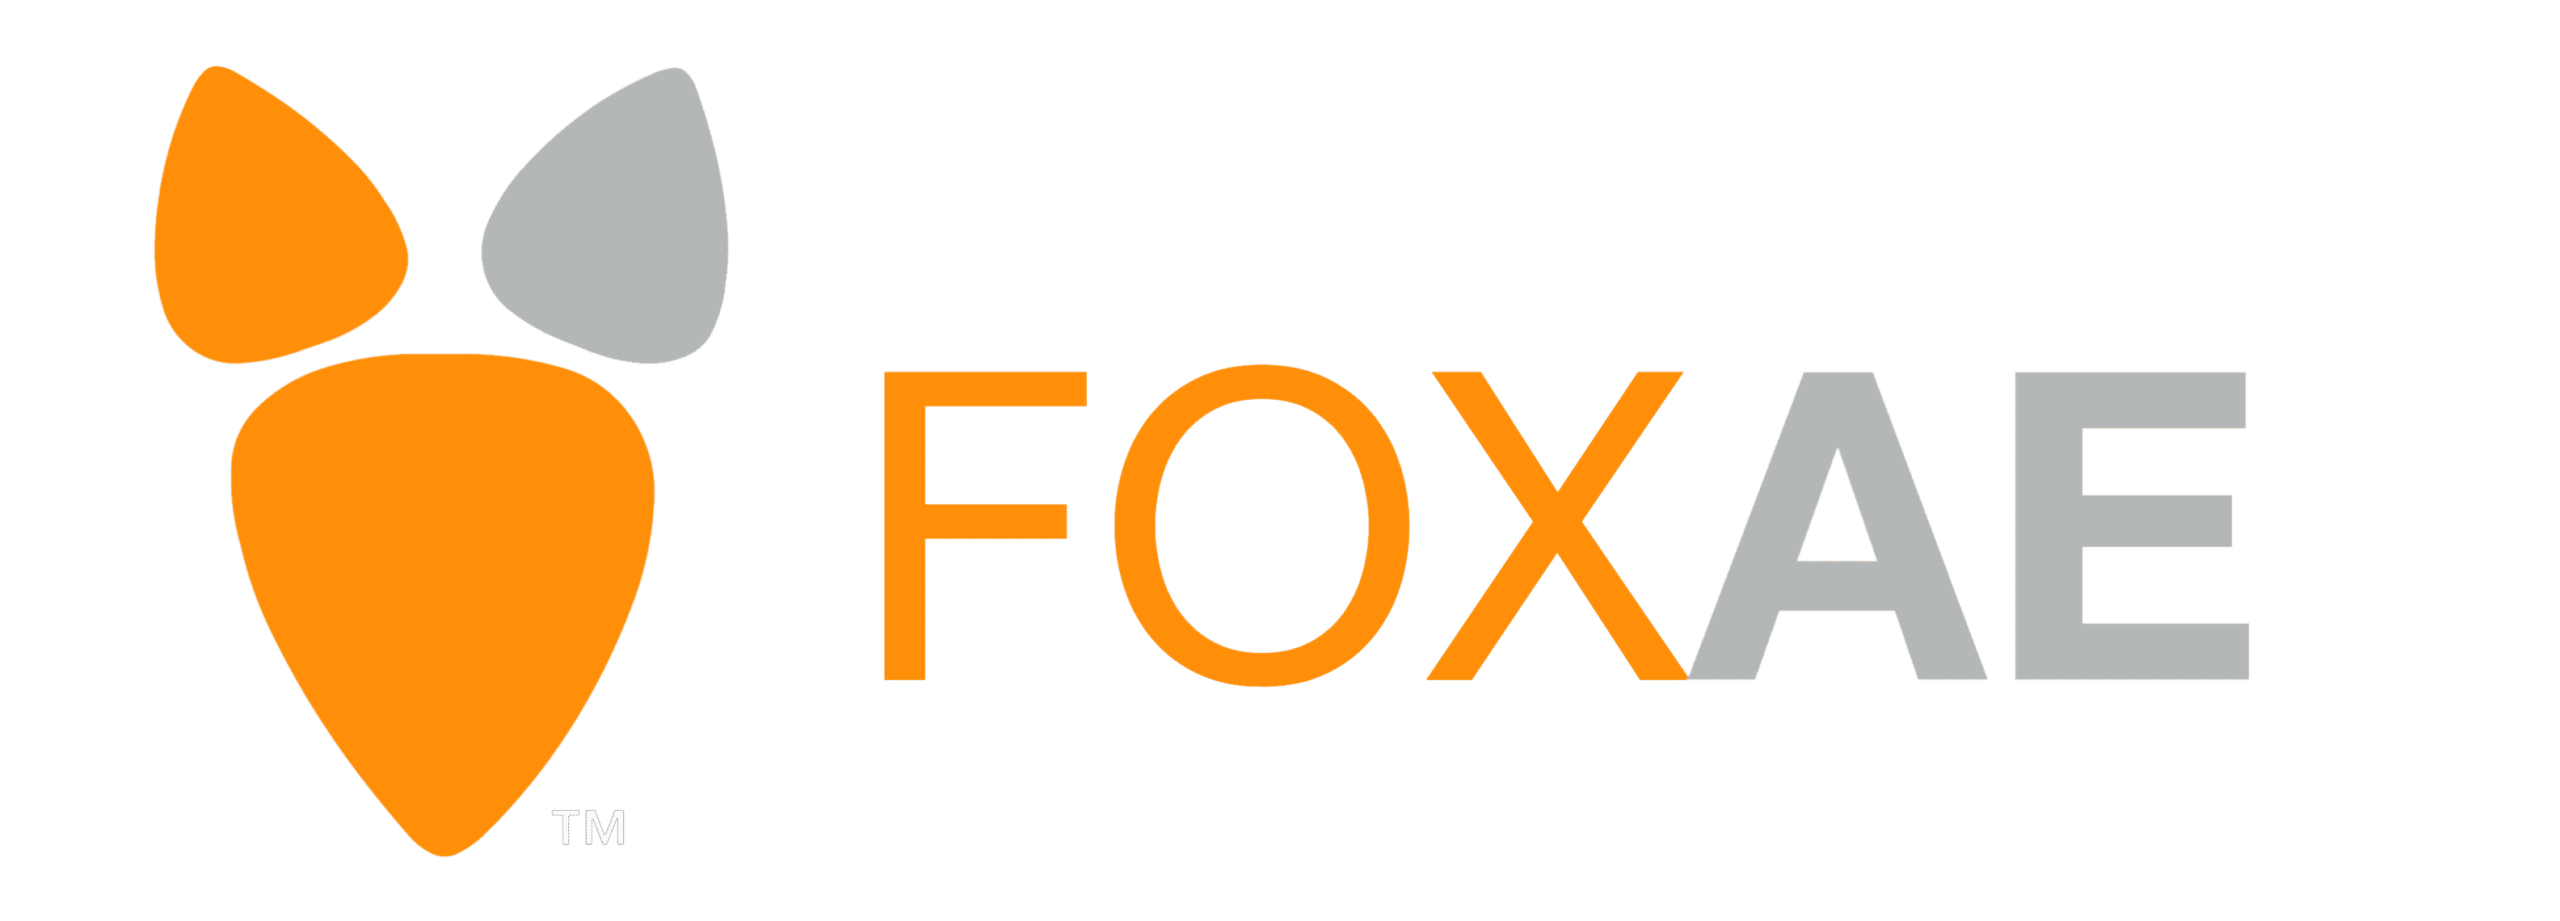 FoxAE Banner